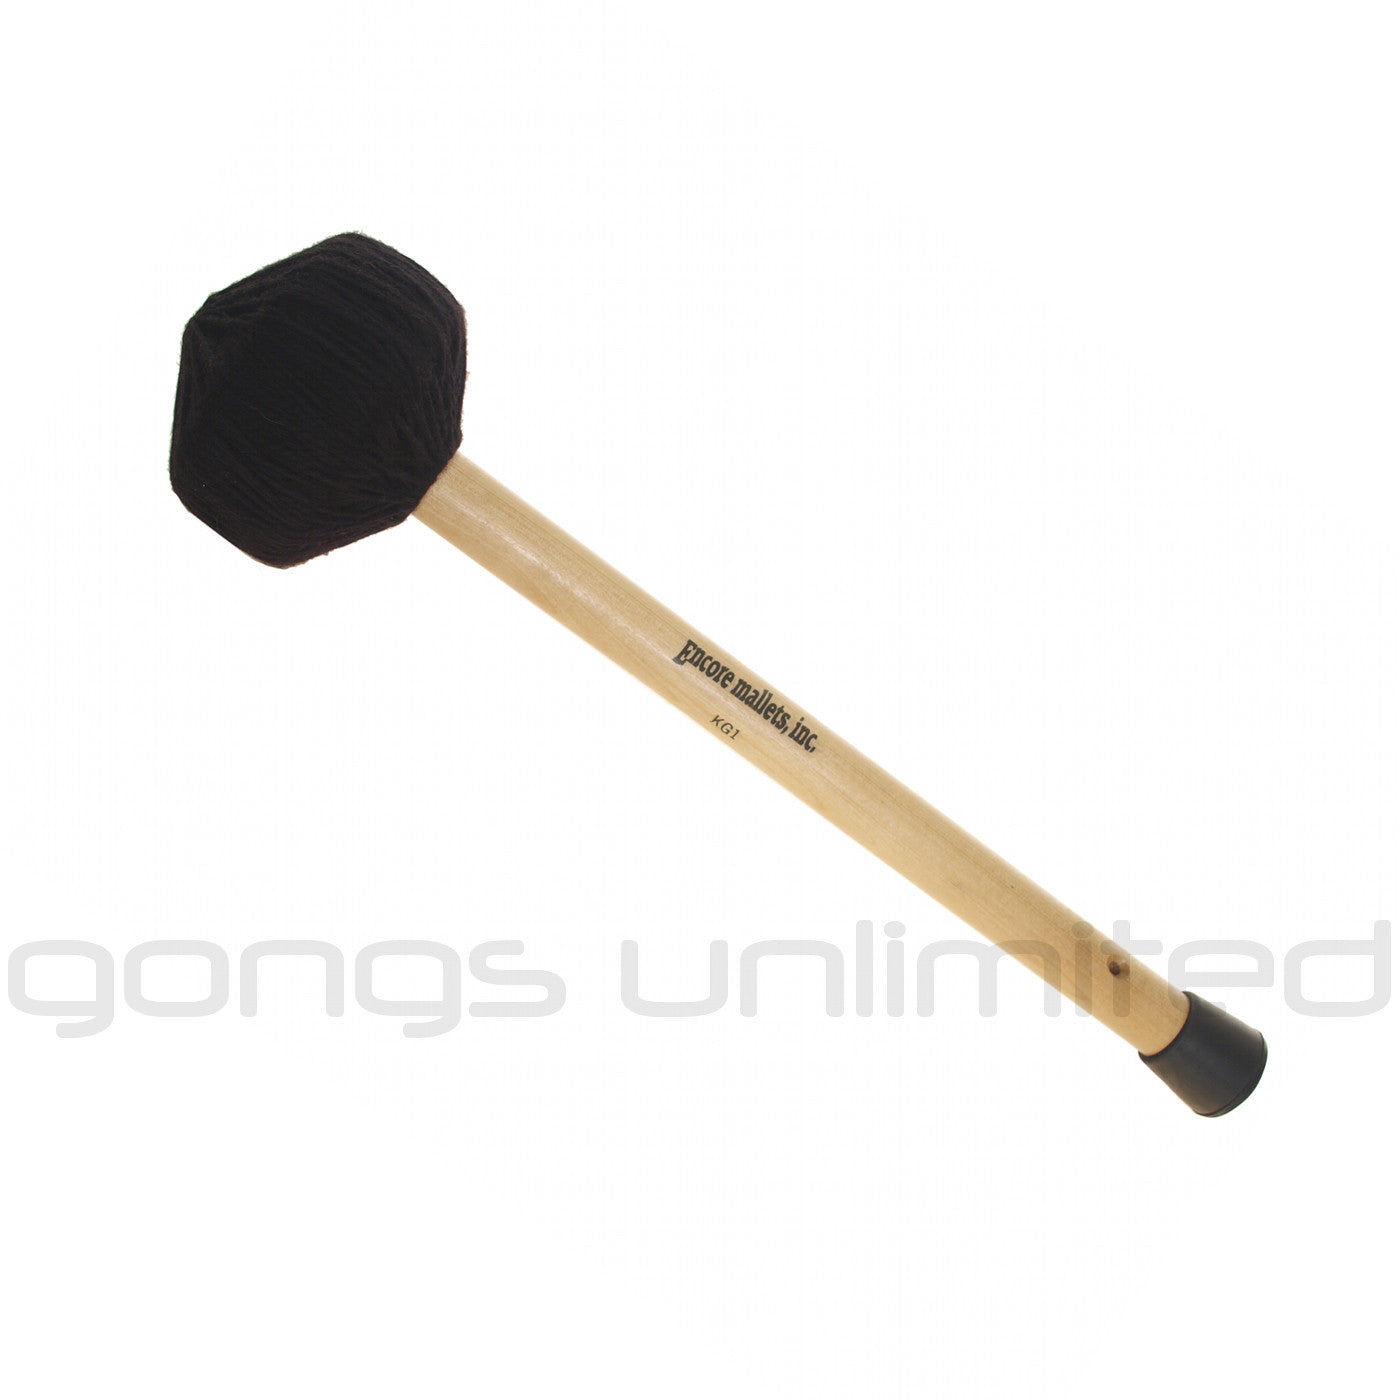 Encore Gong Mallets - Gongs Unlimited